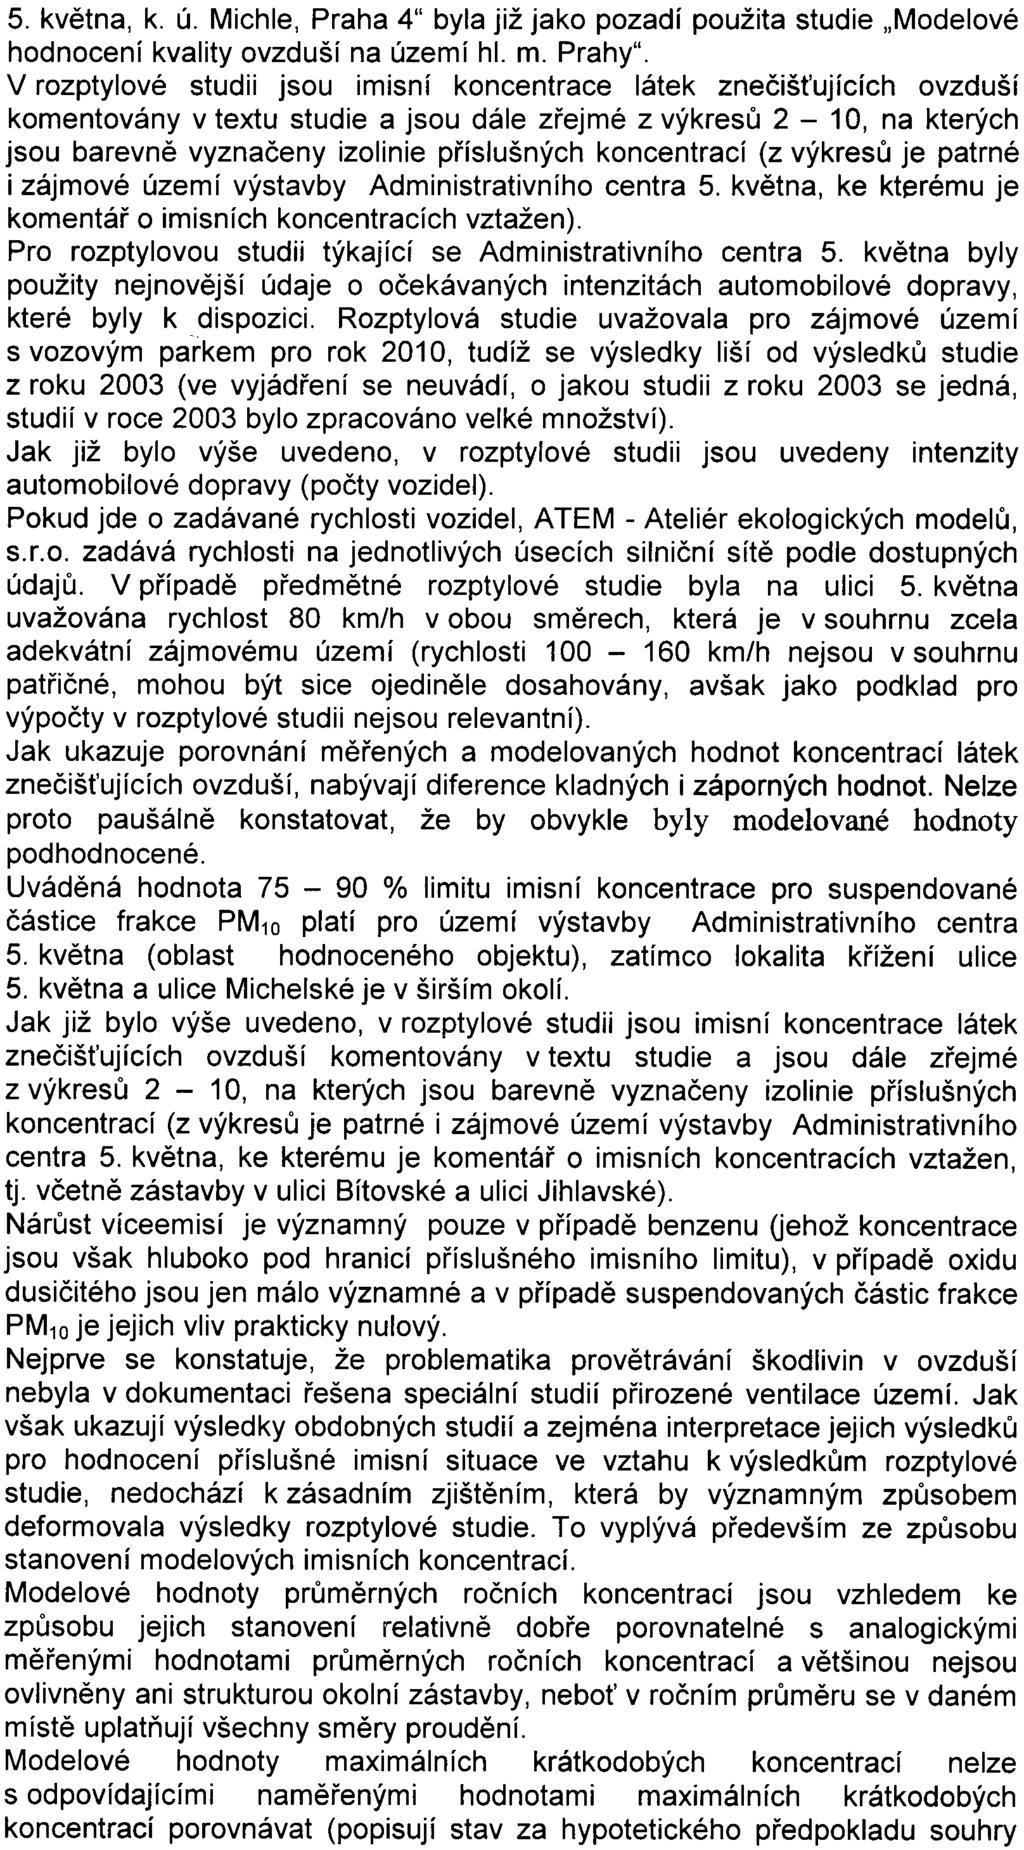 9 5. kvìtna, k. ú. Michle, Praha 4" byla již jako pozadí použita studie "Modelové hodnocení kvality ovzduší na území hl. m. Prahy".